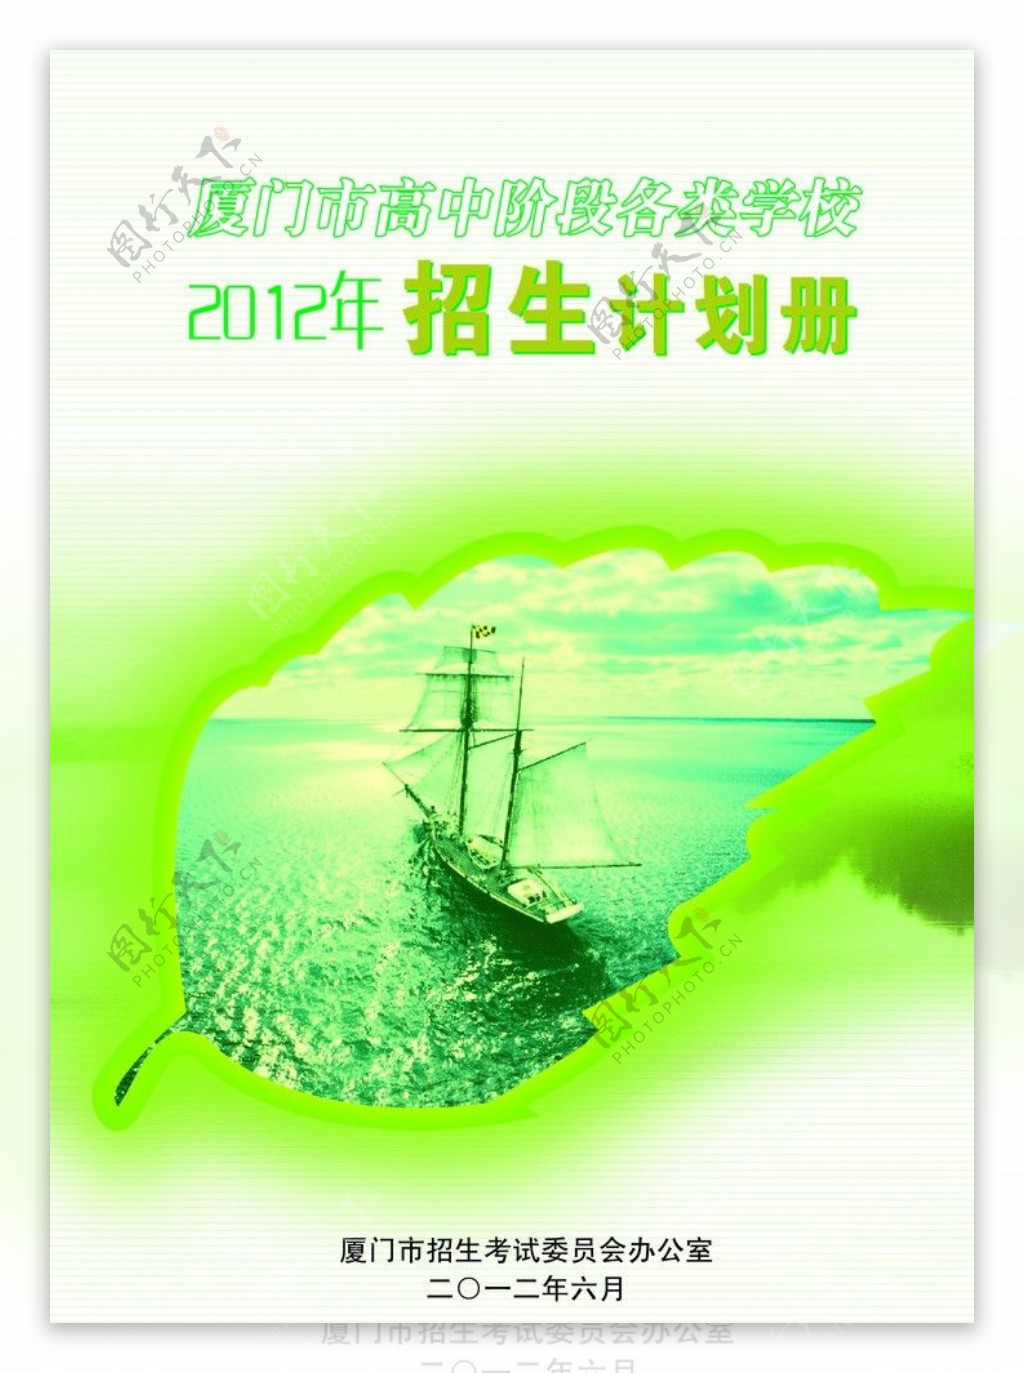 2012年招生计划册封面图片